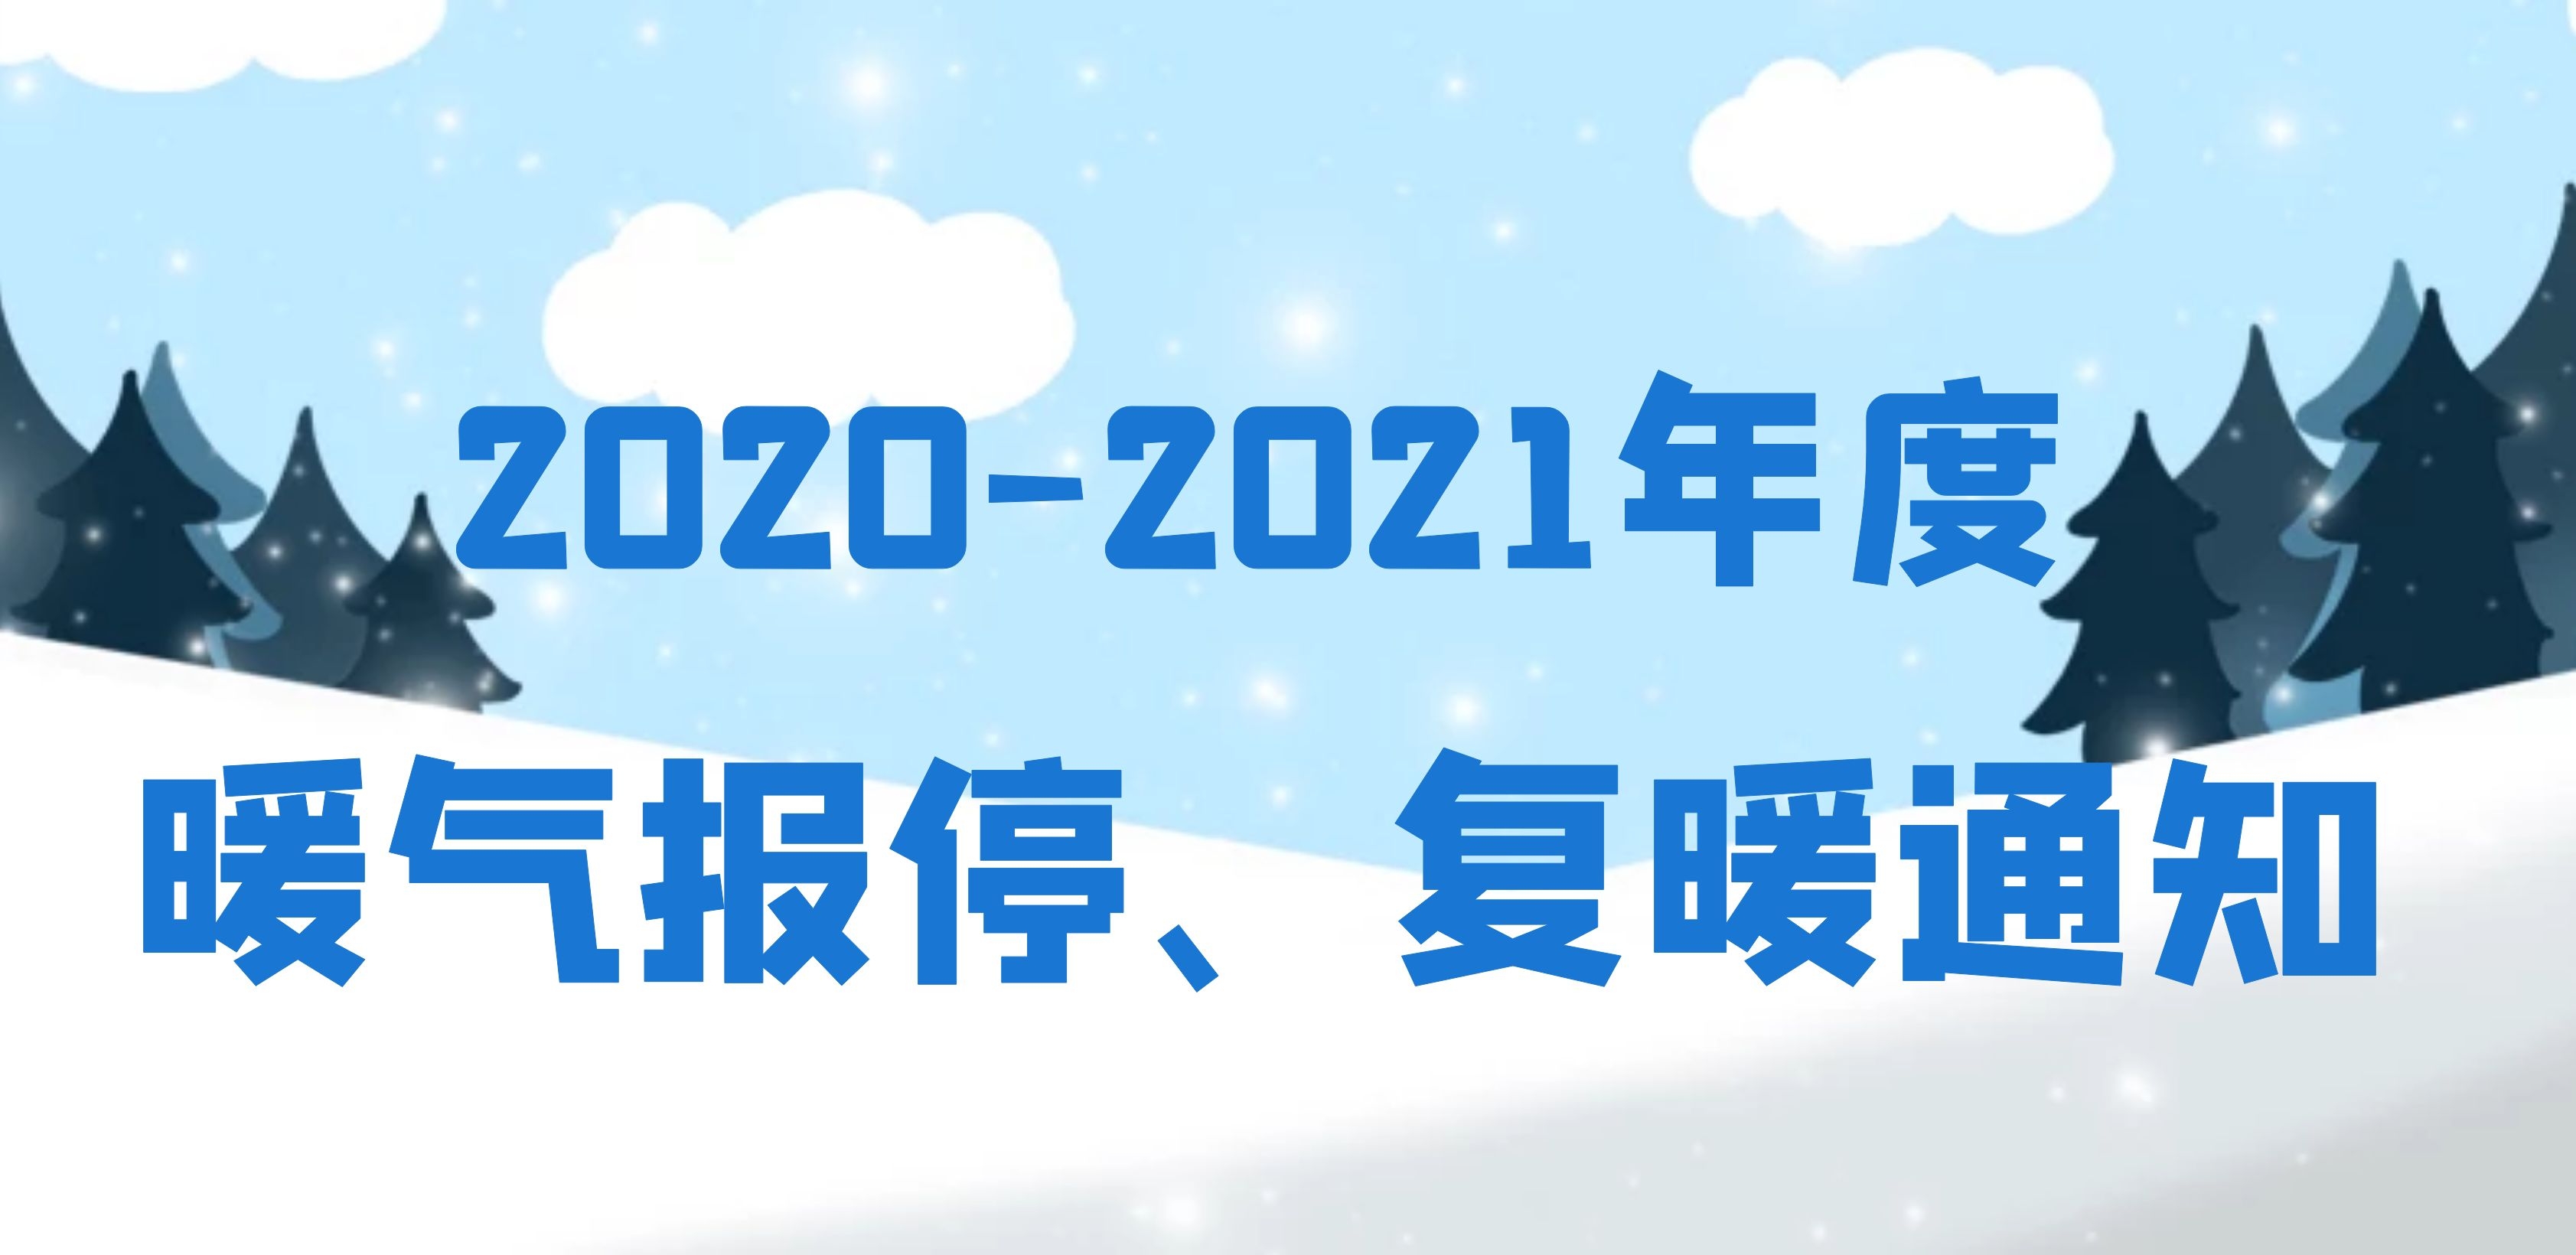 龙口市东城区（嘉元供热） 2020-2021年度暖气报停、复暖通知